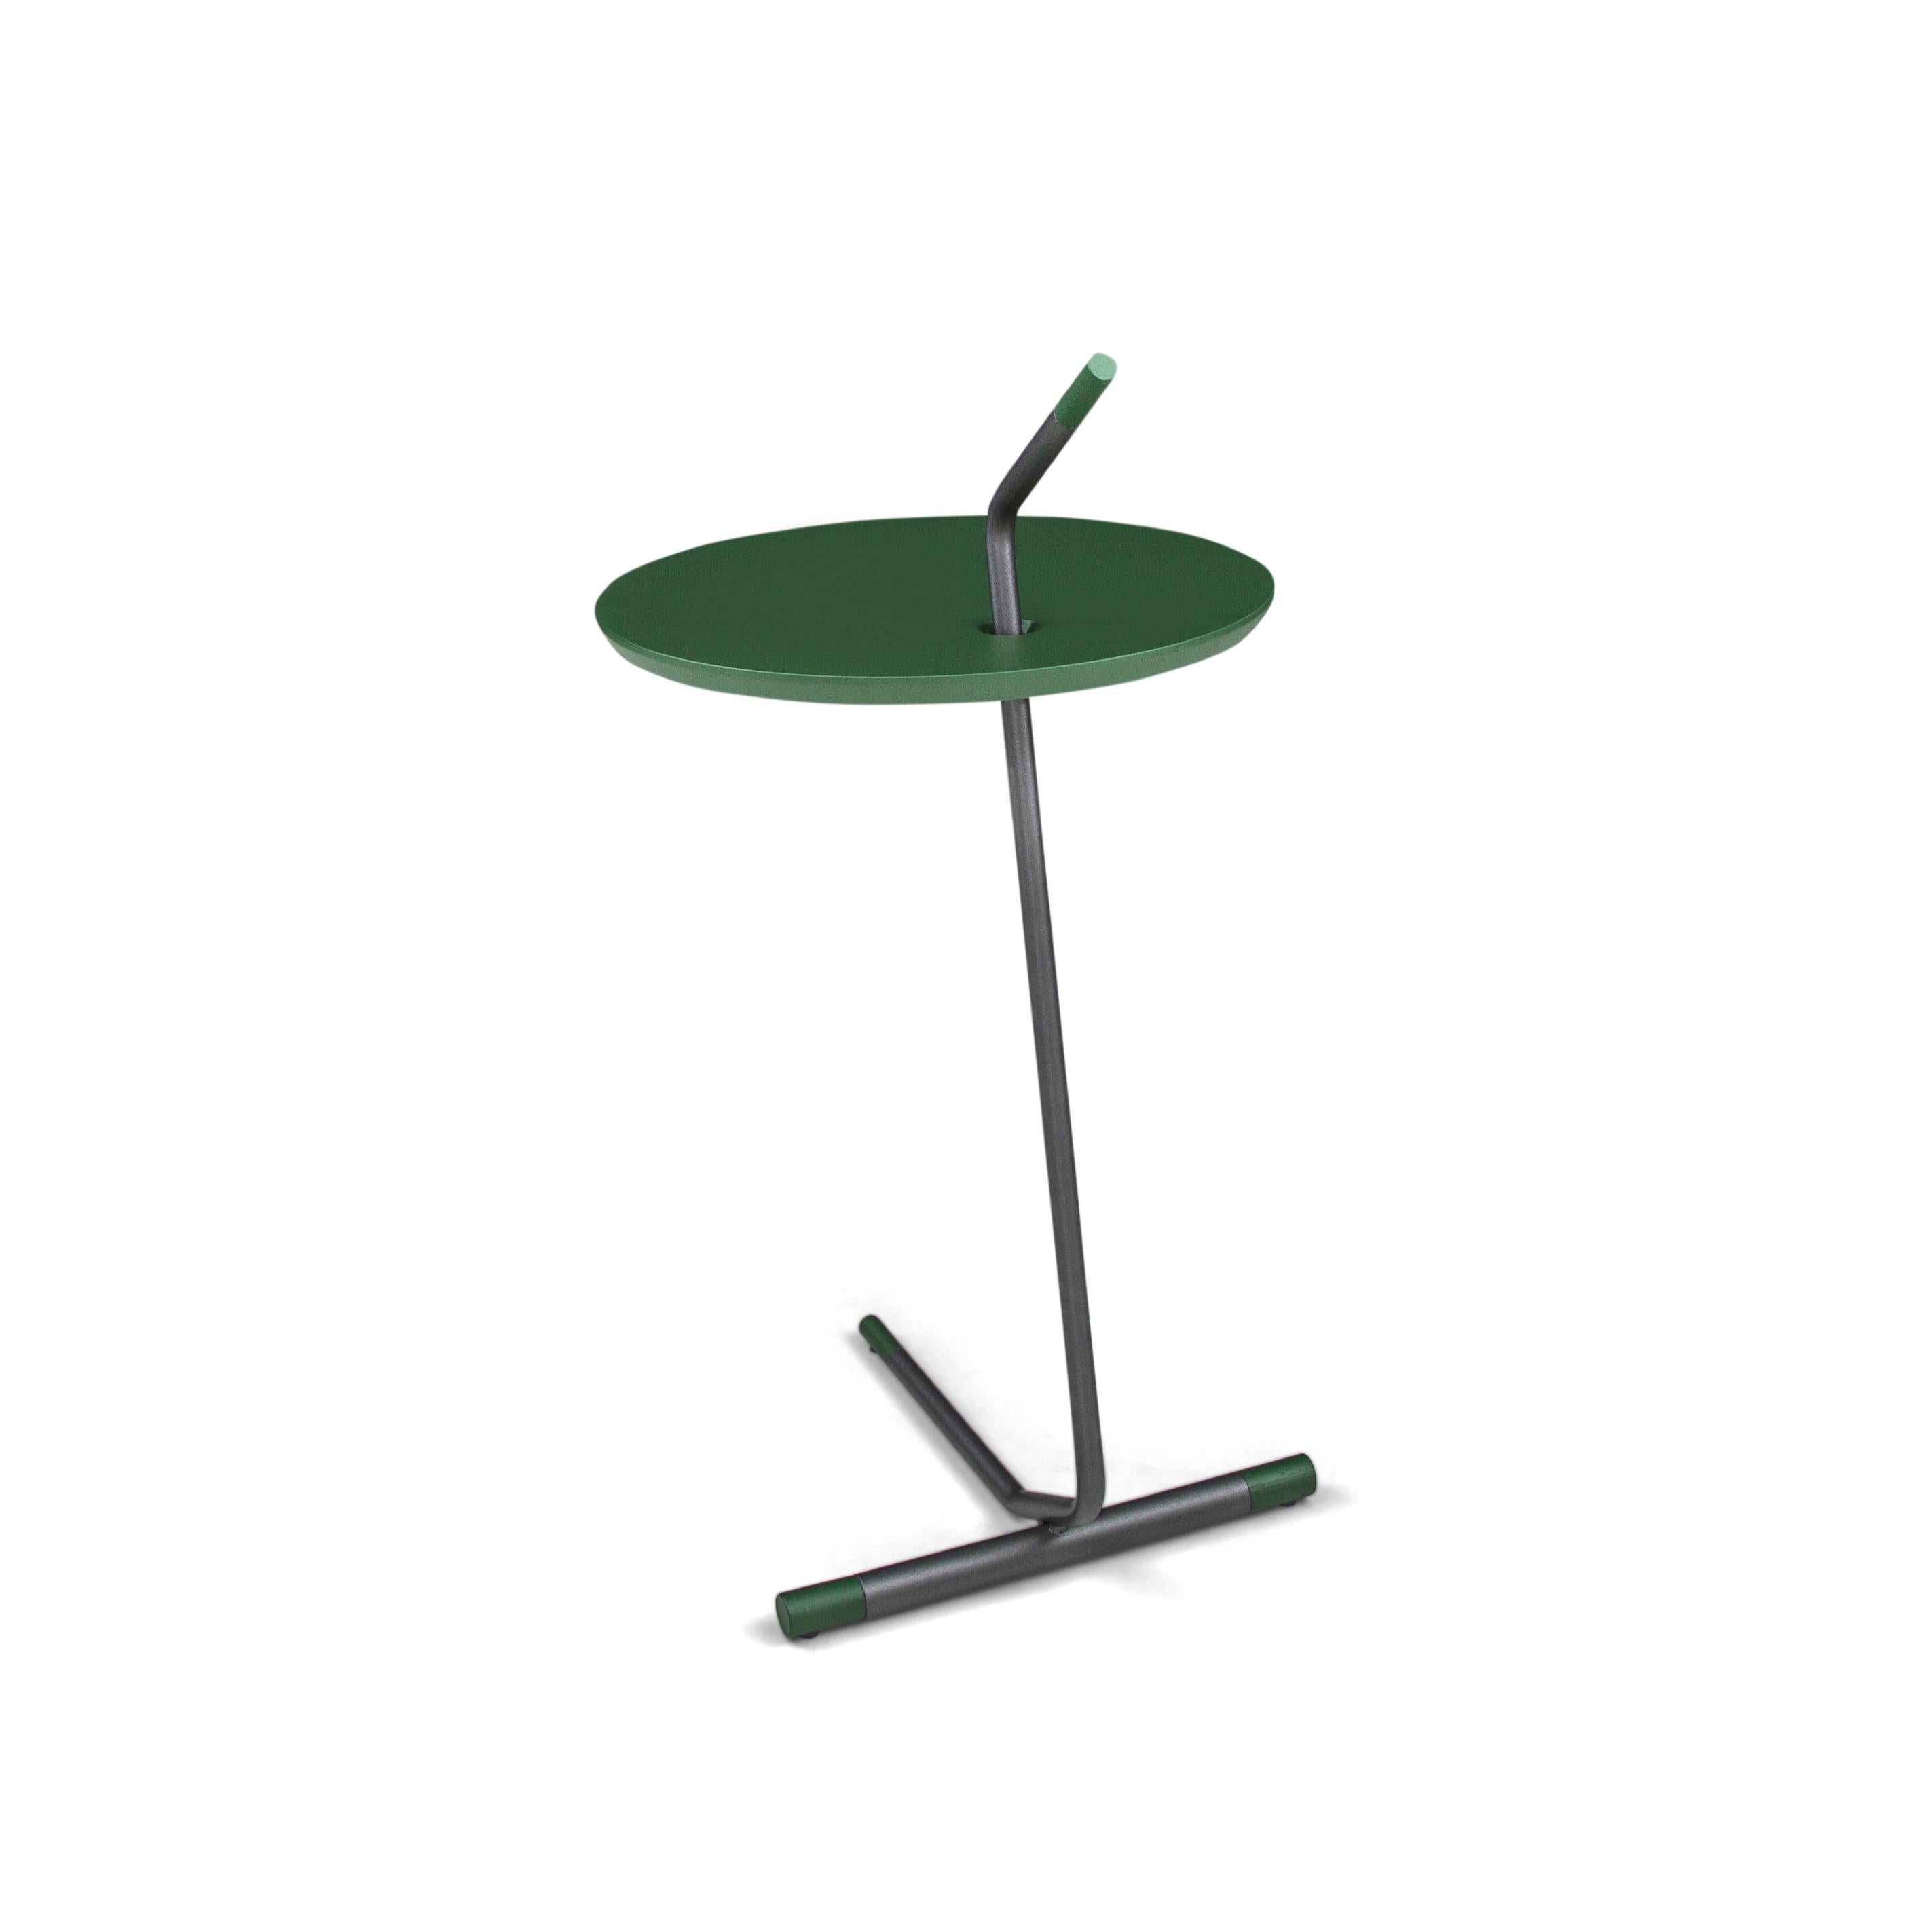 La table d'appoint like est composée d'un plateau en bois MDF en finition verte et d'une base en métal. Cette table est constituée de parallèles, ce qui lui confère une forme distinctive et un aspect non conventionnel. Cette table présente une